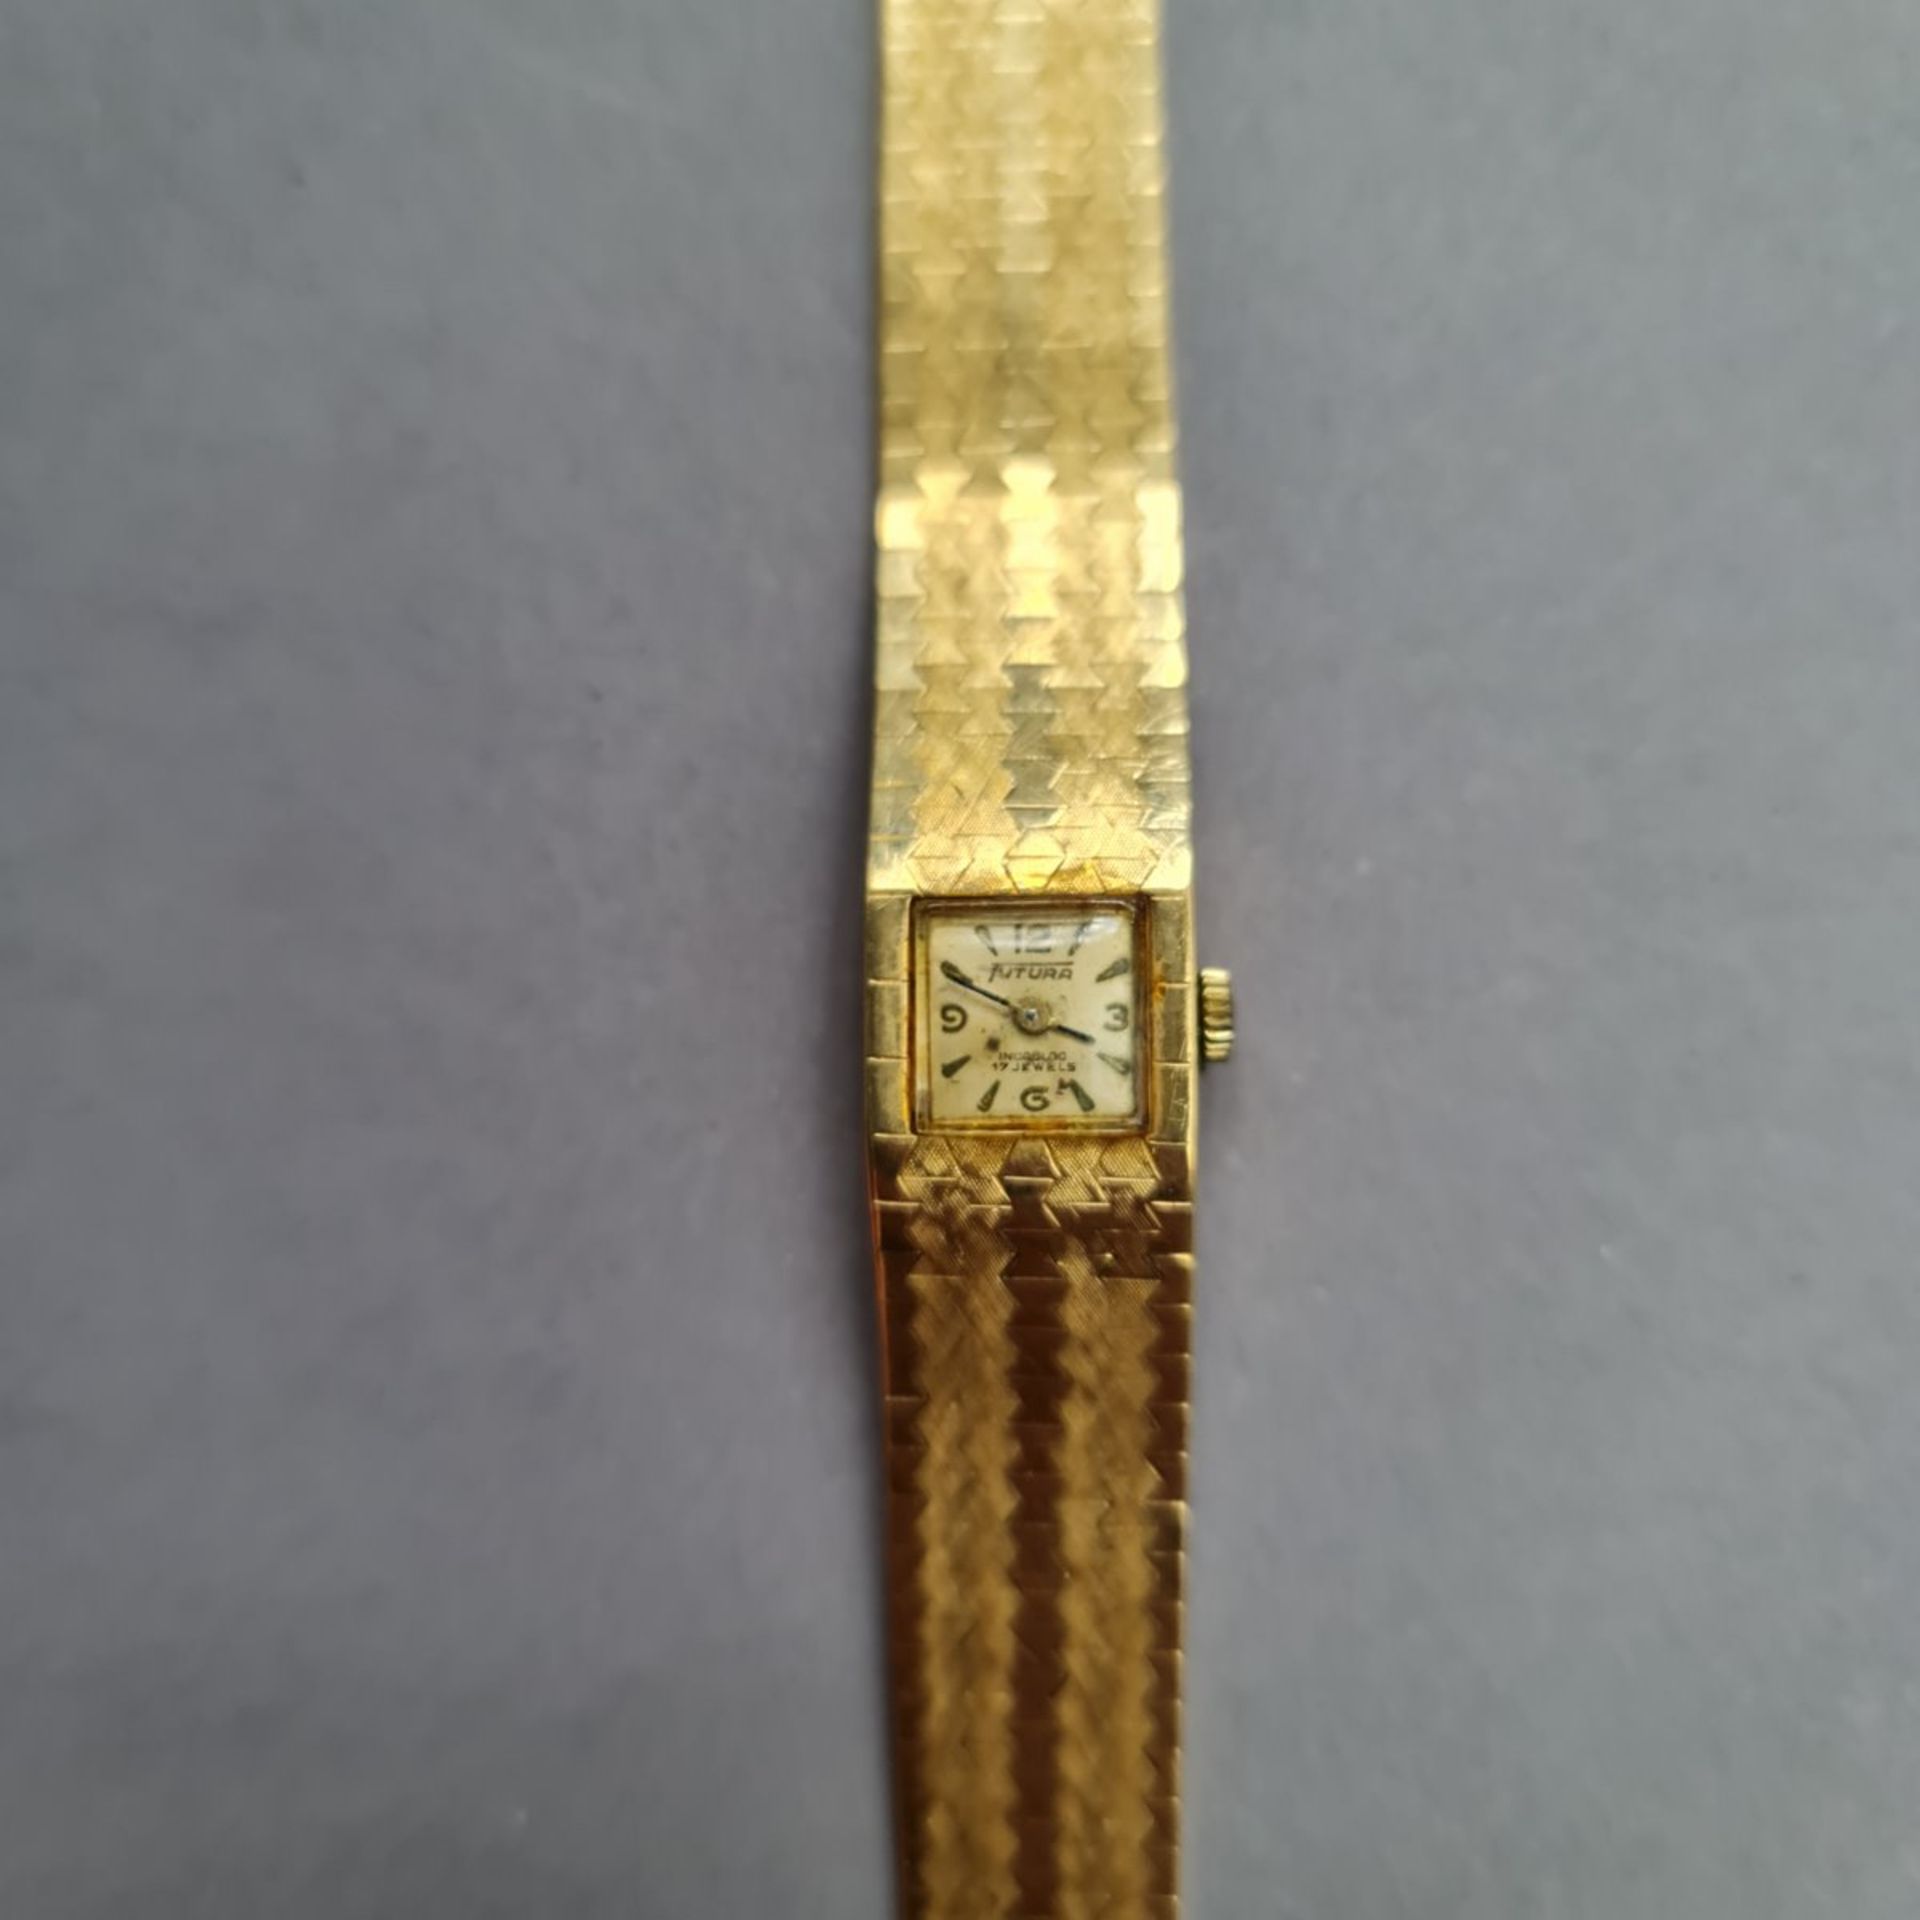 "Futura" Armbanduhr, auf Ziffernblatt (1 x 1 cm) bez. Futura Incabloc 17 Jewels, Uhr rücks. und Band